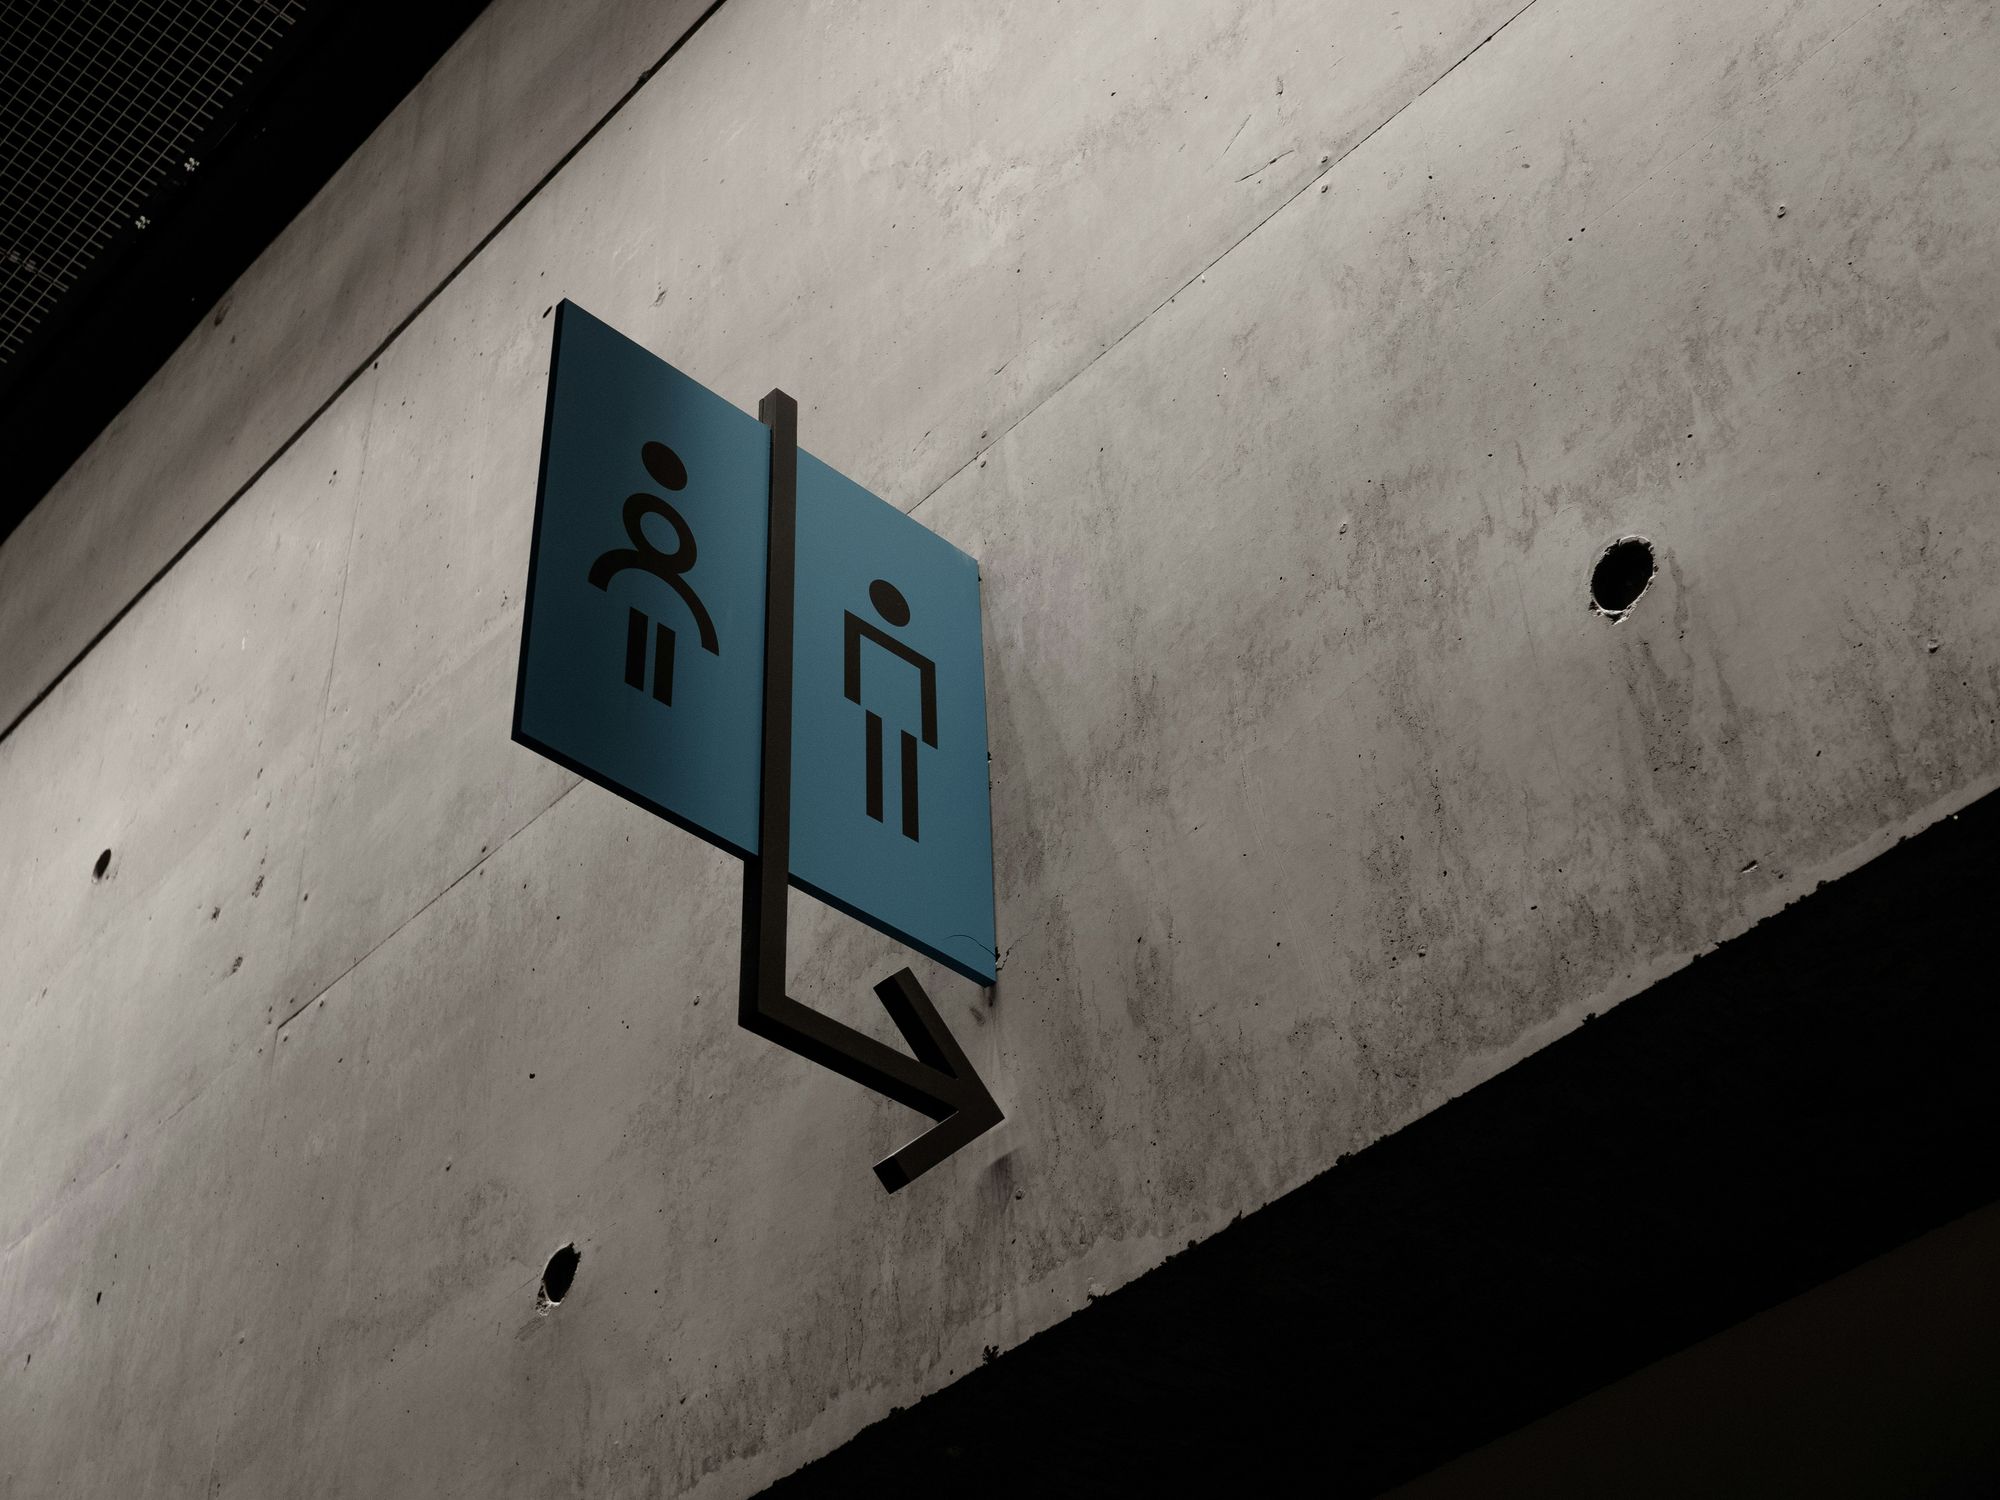 blue public restroom sign